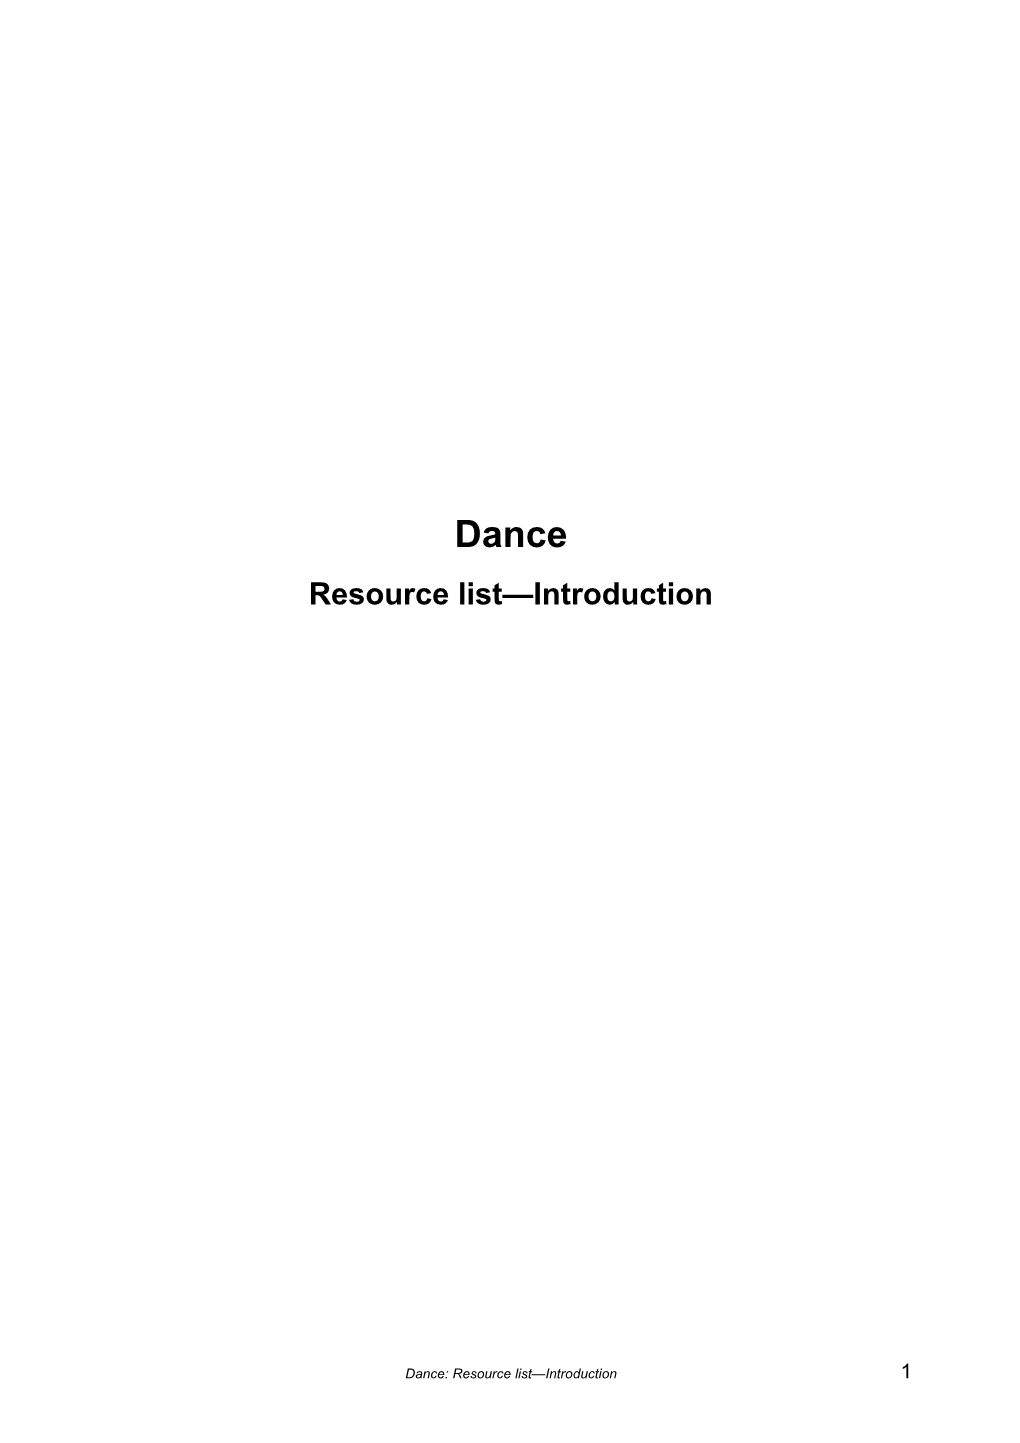 Dance Resource List Print Materials